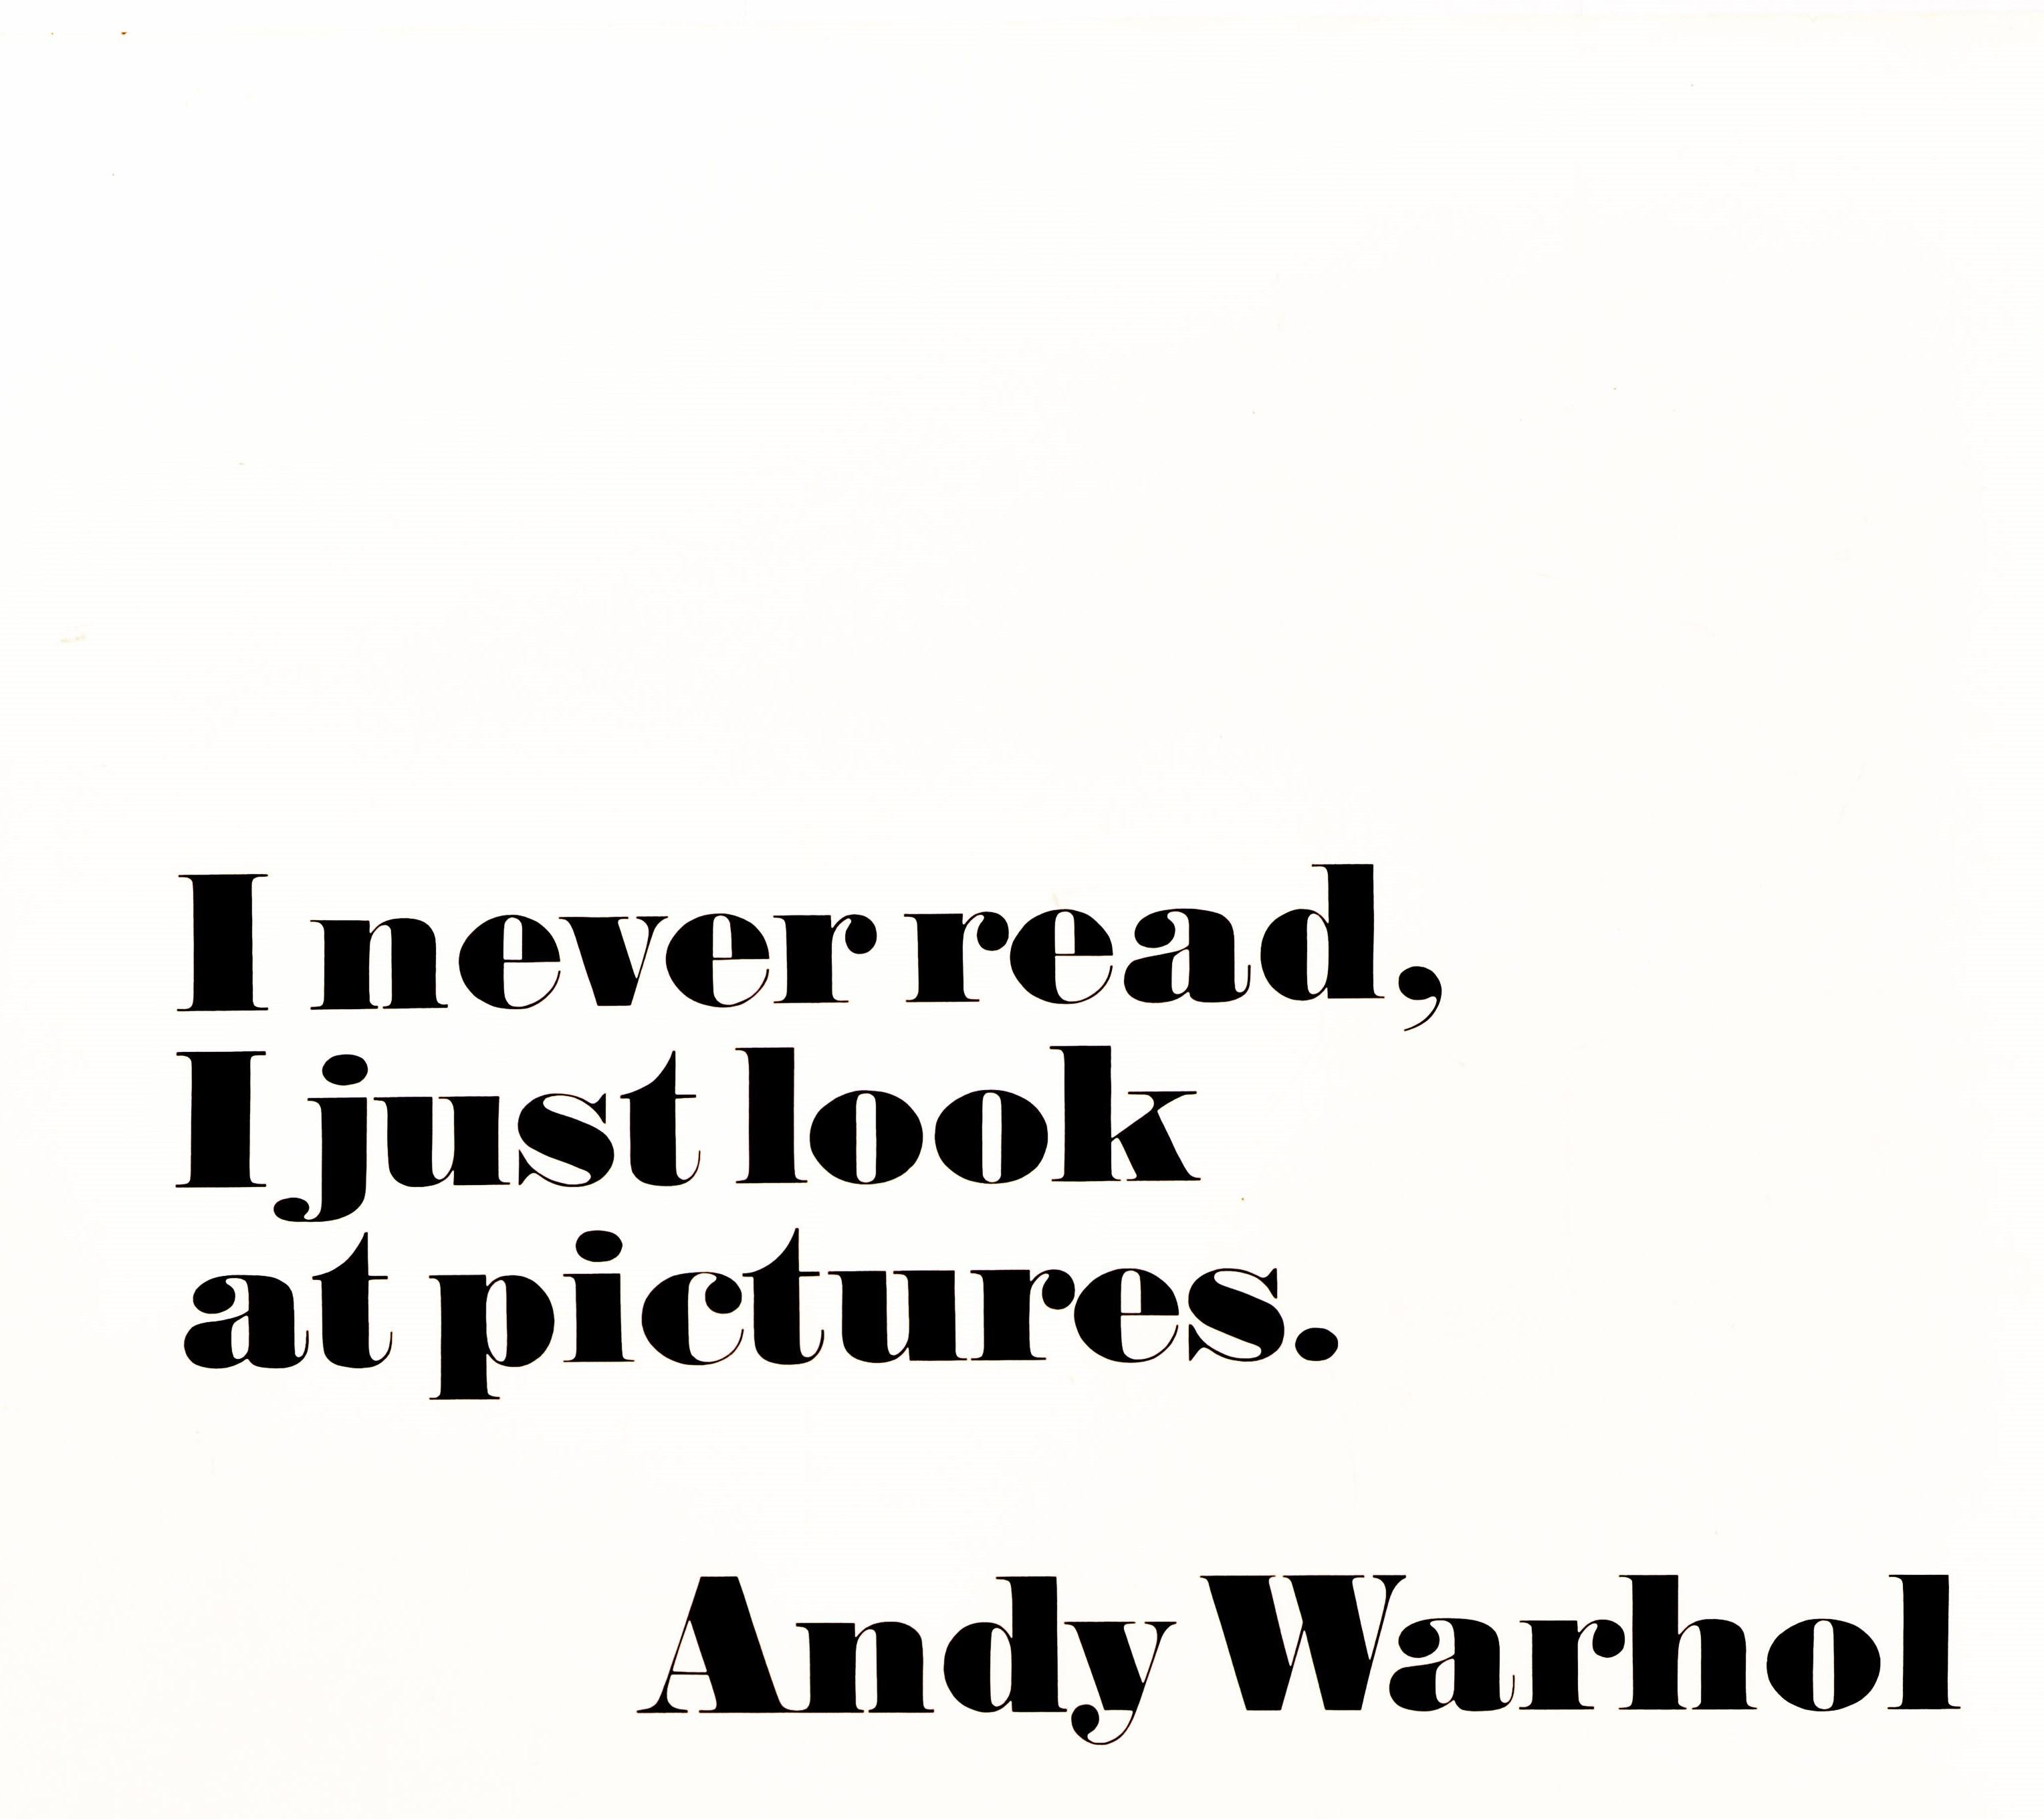 Affiche publicitaire originale d'époque pour l'exposition personnelle d'Andy Warhol au Moderna Museet Stockholm Sweden Museum of Modern Art du 10 février au 17 mars 1968, comportant une citation de l'artiste - I never read, I just look at pictures.